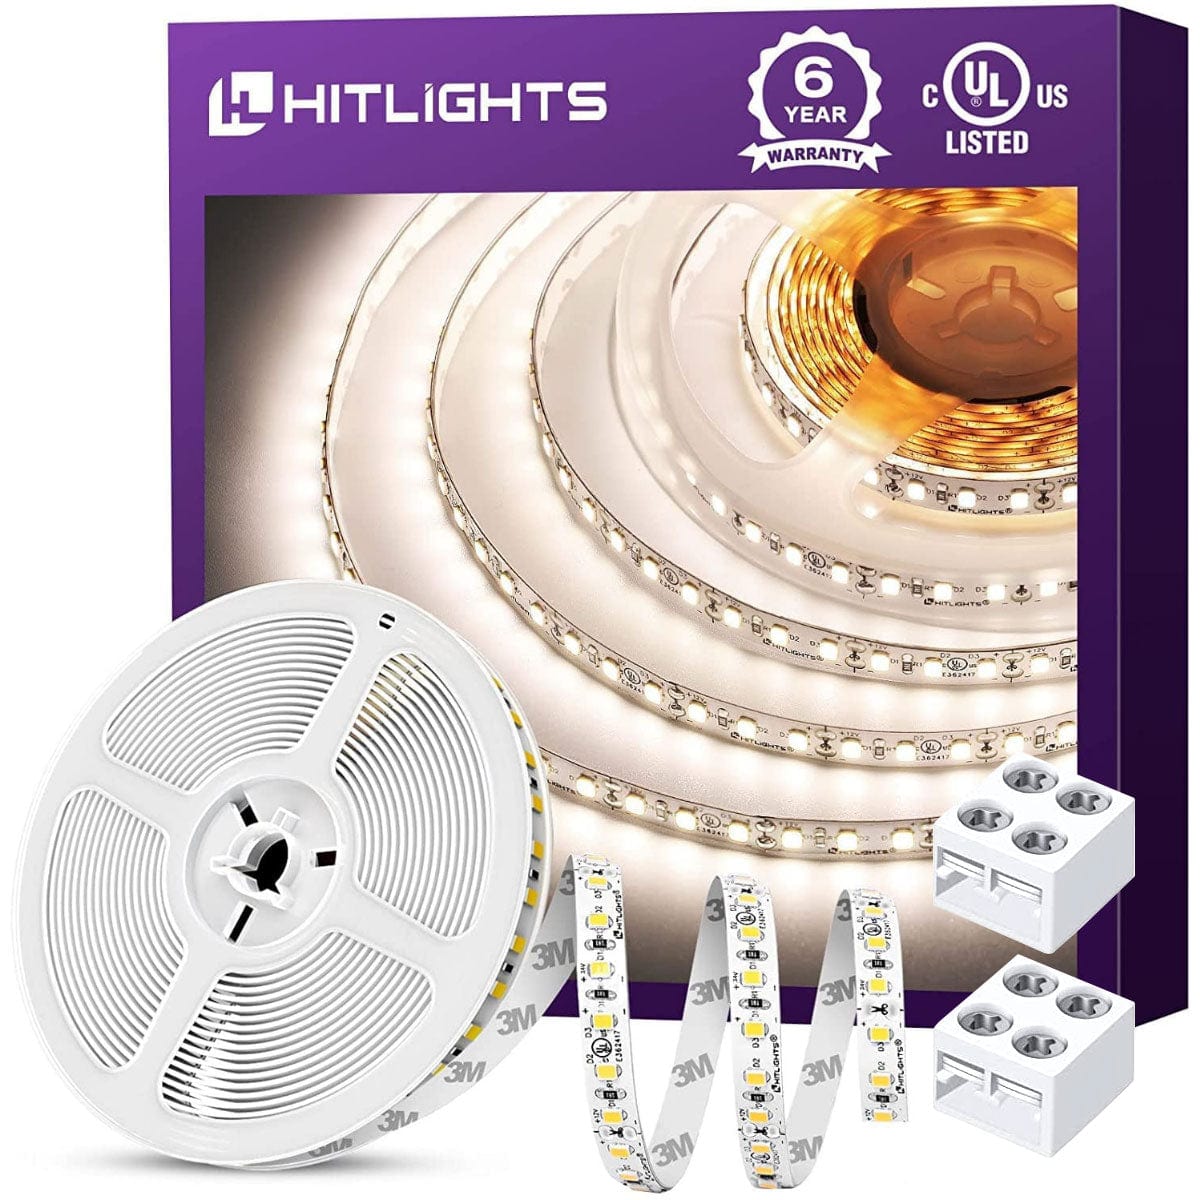 24V LED Strip Lights - LED Solderless Connectors - Single Color